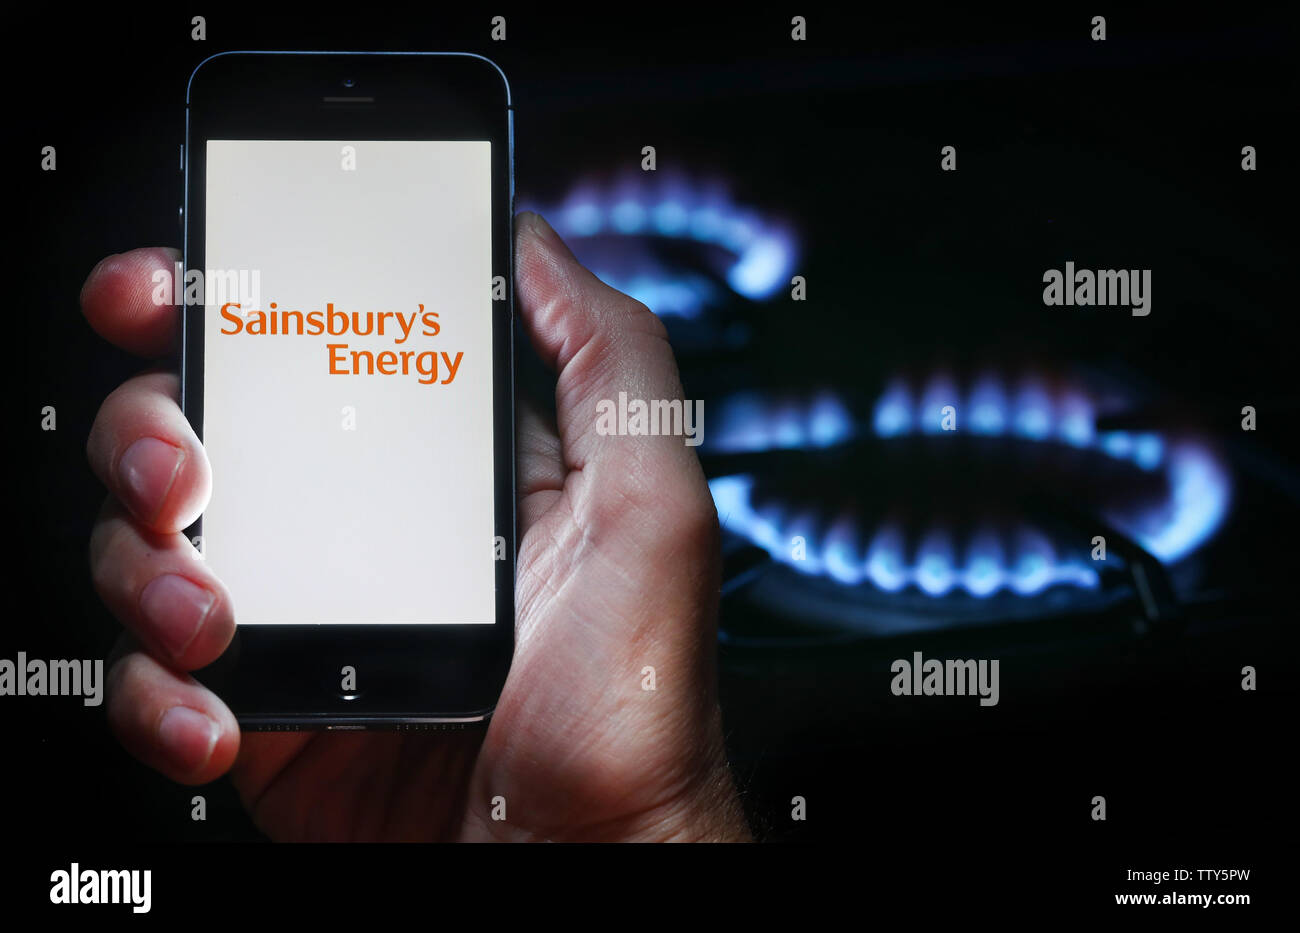 Un uomo che guarda il logo del sito web per l'energia azienda Sainsbury's energia sul suo telefono nella parte anteriore della sua cucina a gas (solo uso editoriale) Foto Stock